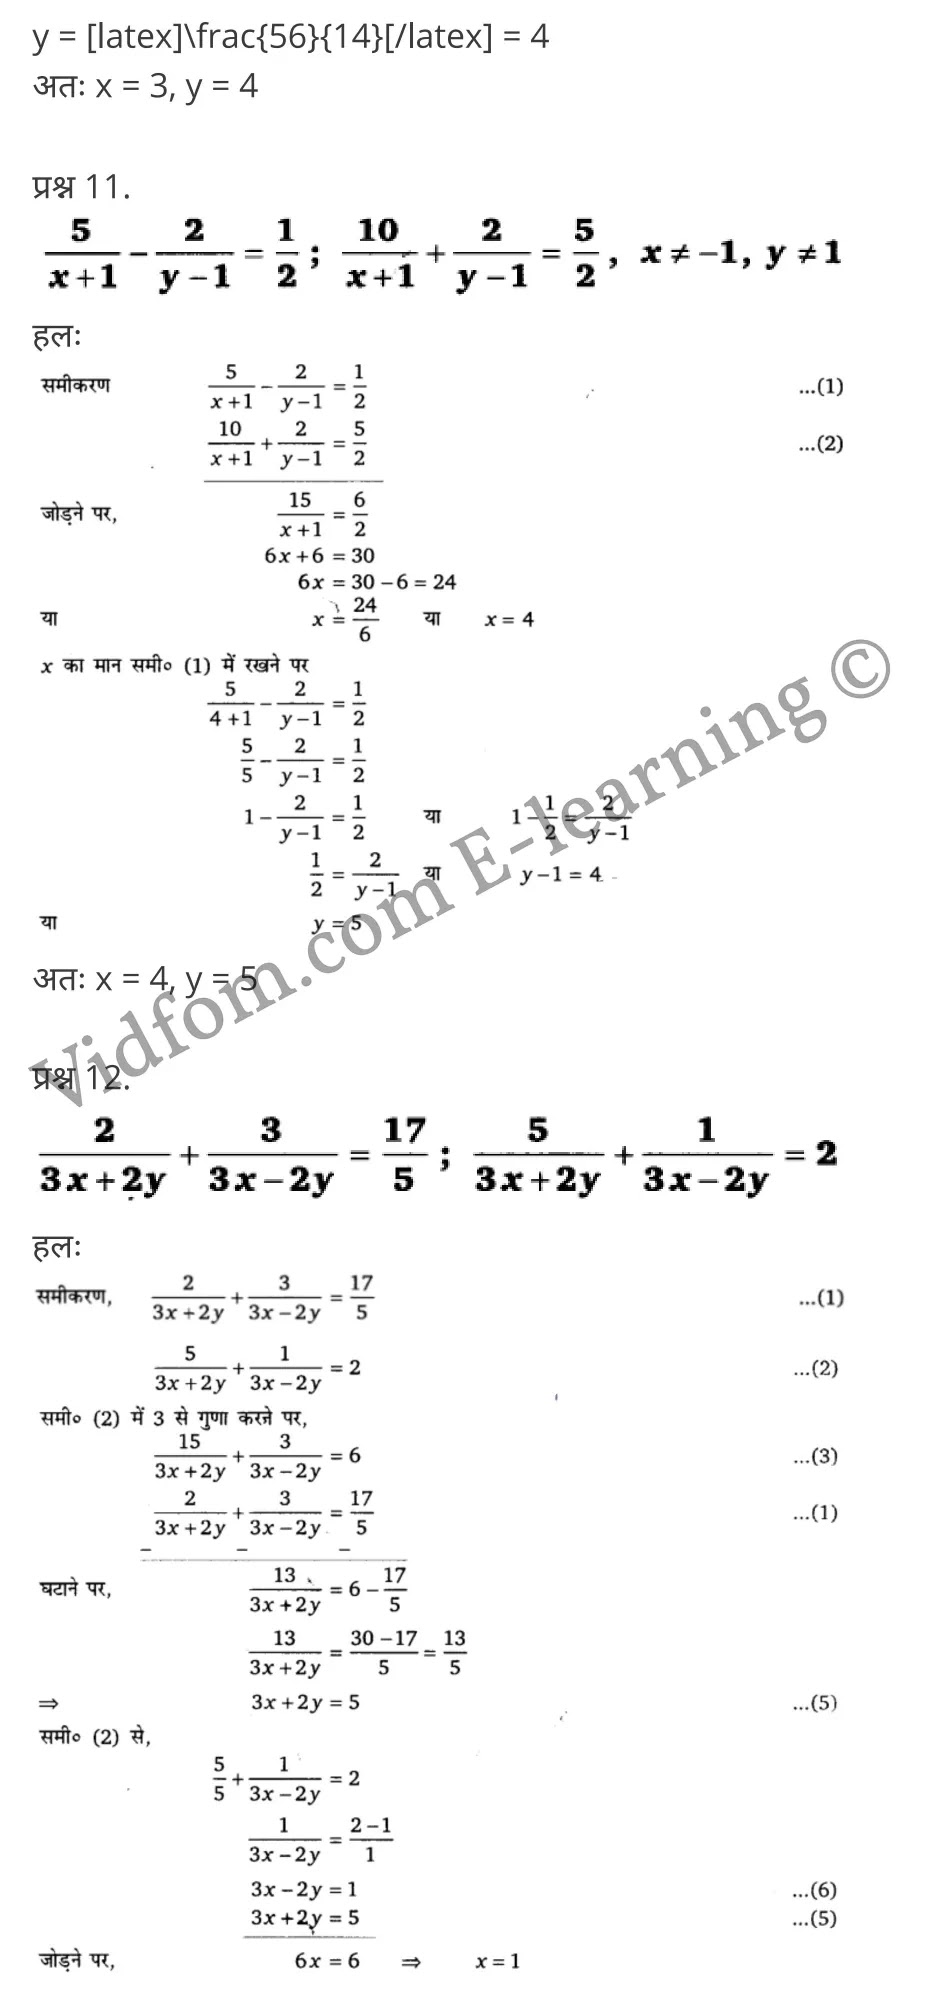 Class 10 Chapter 3 Pair of Linear Equation in Two Variables (दो चर वाले रैखिक समीकरण युग्म)  Chapter 3 Pair of Linear Equation in Two Variables Ex 3.1 Chapter 3 Pair of Linear Equation in Two Variables Ex 3.2 Chapter 3 Pair of Linear Equation in Two Variables Ex 3.3 Chapter 3 Pair of Linear Equation in Two Variables Ex 3.4 Chapter 3 Pair of Linear Equation in Two Variables Ex 3.5 कक्षा 10 बालाजी गणित  के नोट्स  हिंदी में एनसीईआरटी समाधान,     class 10 Balaji Maths Chapter 3,   class 10 Balaji Maths Chapter 3 ncert solutions in Hindi,   class 10 Balaji Maths Chapter 3 notes in hindi,   class 10 Balaji Maths Chapter 3 question answer,   class 10 Balaji Maths Chapter 3 notes,   class 10 Balaji Maths Chapter 3 class 10 Balaji Maths Chapter 3 in  hindi,    class 10 Balaji Maths Chapter 3 important questions in  hindi,   class 10 Balaji Maths Chapter 3 notes in hindi,    class 10 Balaji Maths Chapter 3 test,   class 10 Balaji Maths Chapter 3 pdf,   class 10 Balaji Maths Chapter 3 notes pdf,   class 10 Balaji Maths Chapter 3 exercise solutions,   class 10 Balaji Maths Chapter 3 notes study rankers,   class 10 Balaji Maths Chapter 3 notes,    class 10 Balaji Maths Chapter 3  class 10  notes pdf,   class 10 Balaji Maths Chapter 3 class 10  notes  ncert,   class 10 Balaji Maths Chapter 3 class 10 pdf,   class 10 Balaji Maths Chapter 3  book,   class 10 Balaji Maths Chapter 3 quiz class 10  ,    10  th class 10 Balaji Maths Chapter 3  book up board,   up board 10  th class 10 Balaji Maths Chapter 3 notes,  class 10 Balaji Maths,   class 10 Balaji Maths ncert solutions in Hindi,   class 10 Balaji Maths notes in hindi,   class 10 Balaji Maths question answer,   class 10 Balaji Maths notes,  class 10 Balaji Maths class 10 Balaji Maths Chapter 3 in  hindi,    class 10 Balaji Maths important questions in  hindi,   class 10 Balaji Maths notes in hindi,    class 10 Balaji Maths test,  class 10 Balaji Maths class 10 Balaji Maths Chapter 3 pdf,   class 10 Balaji Maths notes pdf,   class 10 Balaji Maths exercise solutions,   class 10 Balaji Maths,  class 10 Balaji Maths notes study rankers,   class 10 Balaji Maths notes,  class 10 Balaji Maths notes,   class 10 Balaji Maths  class 10  notes pdf,   class 10 Balaji Maths class 10  notes  ncert,   class 10 Balaji Maths class 10 pdf,   class 10 Balaji Maths  book,  class 10 Balaji Maths quiz class 10  ,  10  th class 10 Balaji Maths    book up board,    up board 10  th class 10 Balaji Maths notes,      कक्षा 10 बालाजी गणित अध्याय 3 ,  कक्षा 10 बालाजी गणित, कक्षा 10 बालाजी गणित अध्याय 3  के नोट्स हिंदी में,  कक्षा 10 का हिंदी अध्याय 3 का प्रश्न उत्तर,  कक्षा 10 बालाजी गणित अध्याय 3  के नोट्स,  10 कक्षा बालाजी गणित  हिंदी में, कक्षा 10 बालाजी गणित अध्याय 3  हिंदी में,  कक्षा 10 बालाजी गणित अध्याय 3  महत्वपूर्ण प्रश्न हिंदी में, कक्षा 10   हिंदी के नोट्स  हिंदी में, बालाजी गणित हिंदी में  कक्षा 10 नोट्स pdf,    बालाजी गणित हिंदी में  कक्षा 10 नोट्स 2021 ncert,   बालाजी गणित हिंदी  कक्षा 10 pdf,   बालाजी गणित हिंदी में  पुस्तक,   बालाजी गणित हिंदी में की बुक,   बालाजी गणित हिंदी में  प्रश्नोत्तरी class 10 ,  बिहार बोर्ड 10  पुस्तक वीं हिंदी नोट्स,    बालाजी गणित कक्षा 10 नोट्स 2021 ncert,   बालाजी गणित  कक्षा 10 pdf,   बालाजी गणित  पुस्तक,   बालाजी गणित  प्रश्नोत्तरी class 10, कक्षा 10 बालाजी गणित,  कक्षा 10 बालाजी गणित  के नोट्स हिंदी में,  कक्षा 10 का हिंदी का प्रश्न उत्तर,  कक्षा 10 बालाजी गणित  के नोट्स,  10 कक्षा हिंदी 2021  हिंदी में, कक्षा 10 बालाजी गणित  हिंदी में,  कक्षा 10 बालाजी गणित  महत्वपूर्ण प्रश्न हिंदी में, कक्षा 10 बालाजी गणित  नोट्स  हिंदी में,